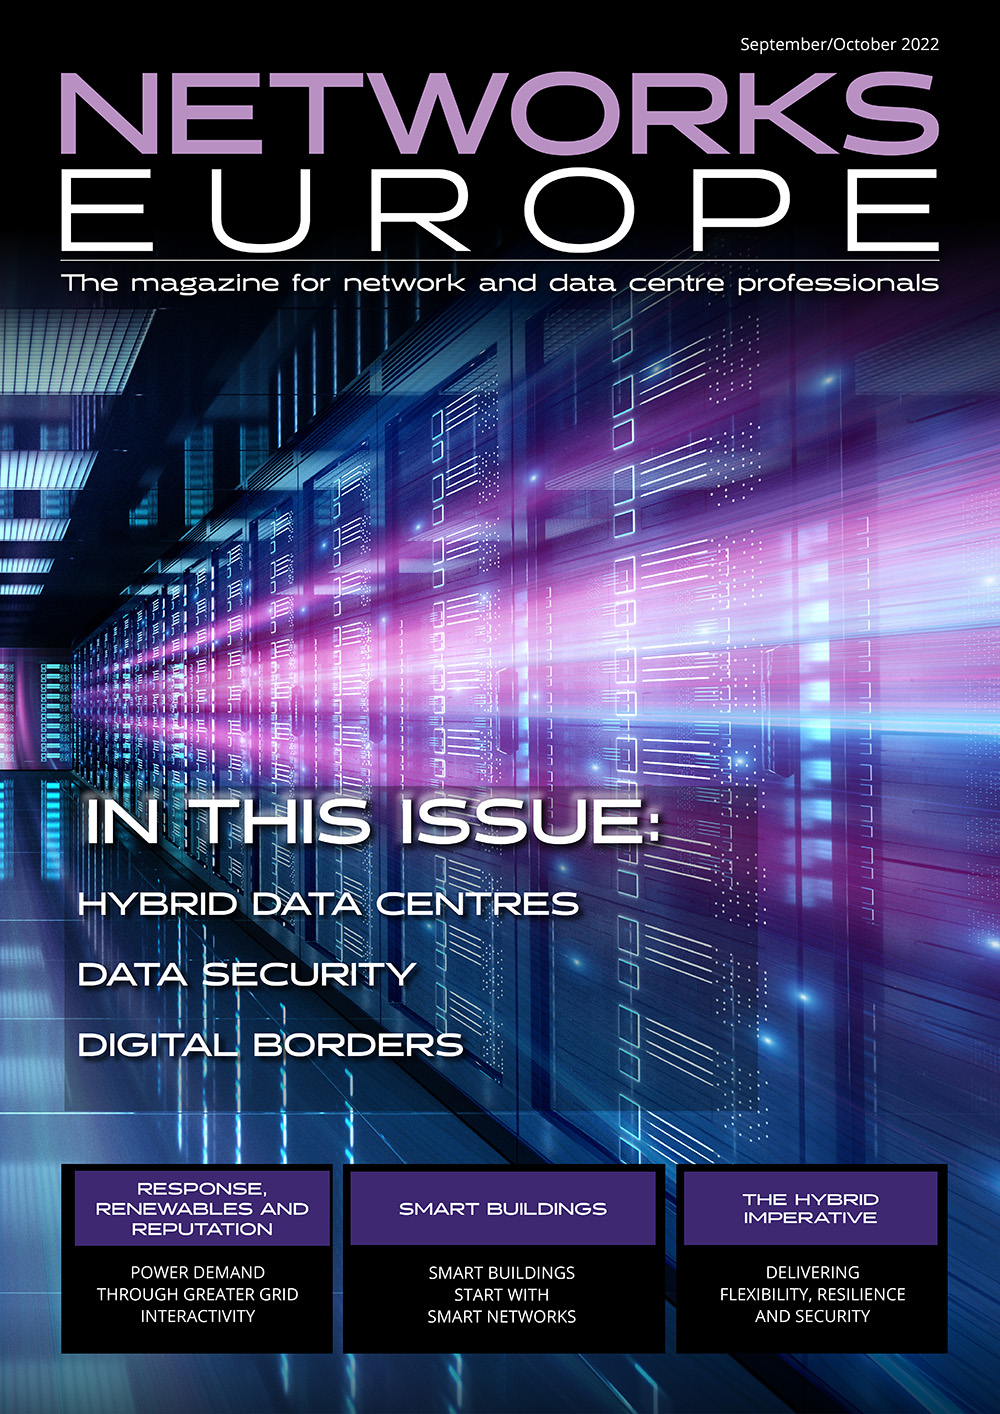 Networks Europe Magazine - September/October 2022 Issue